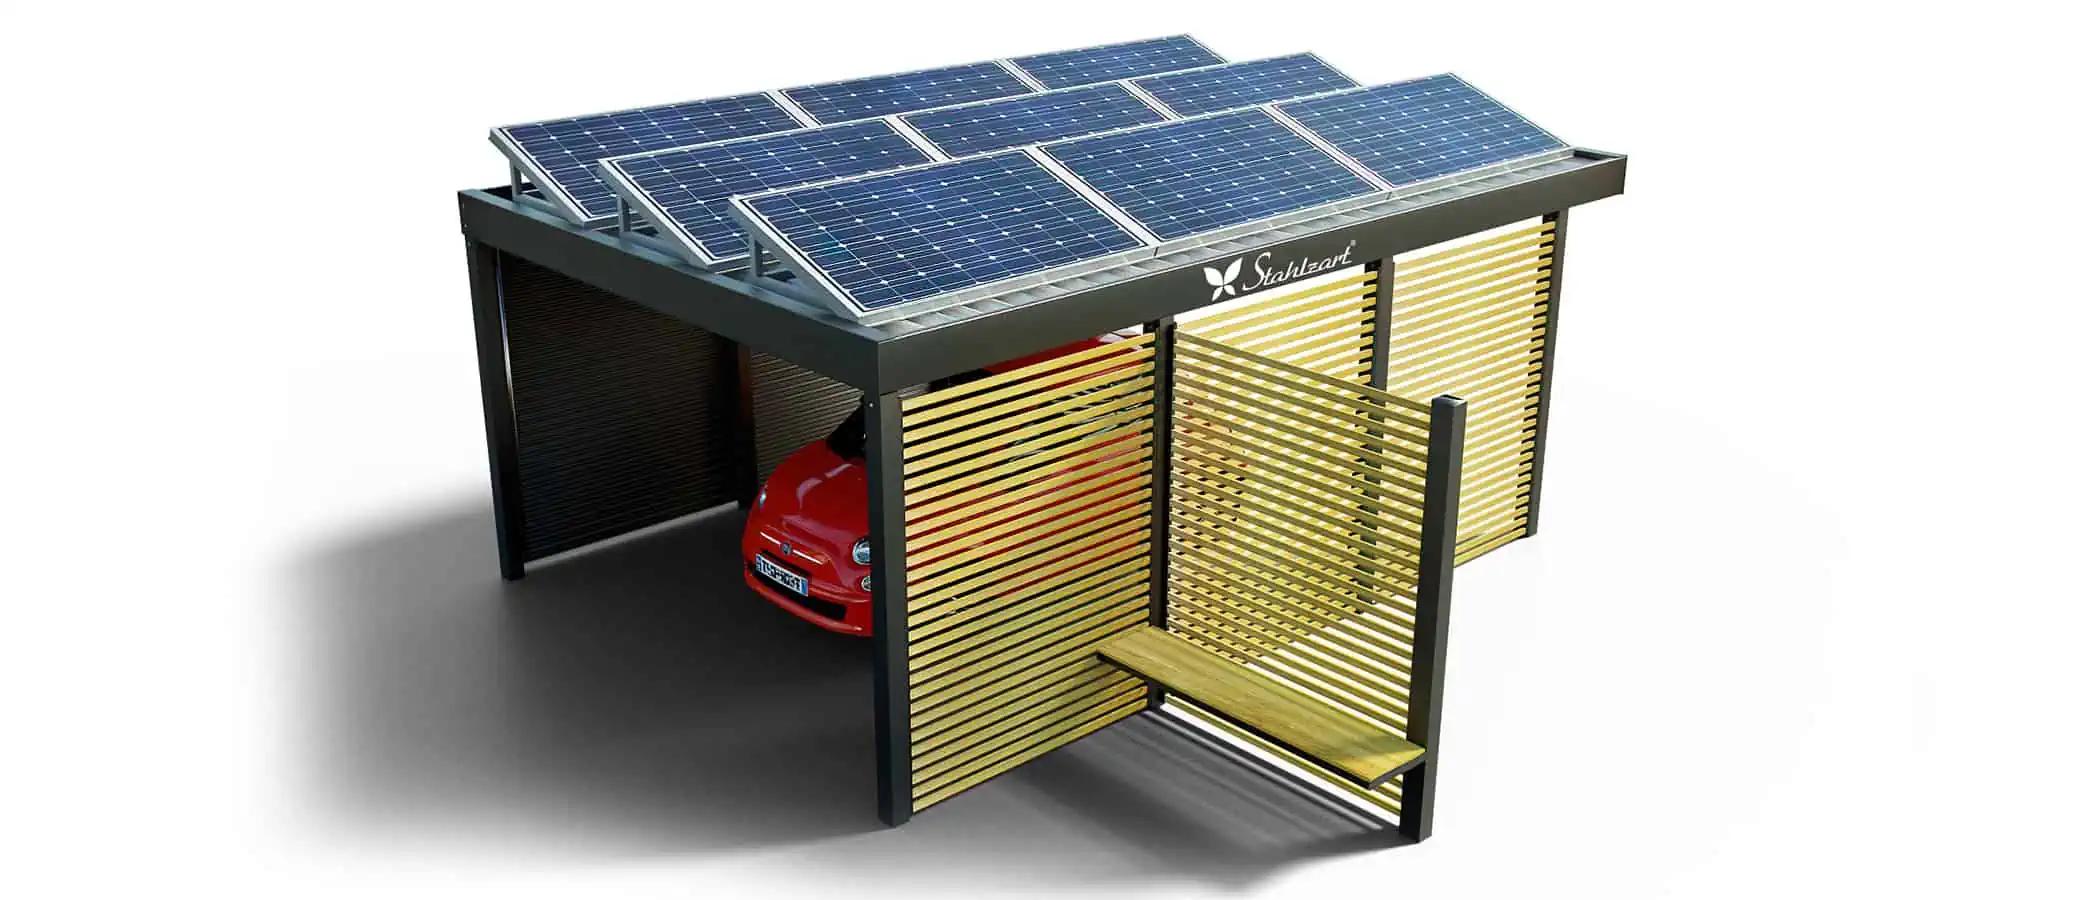 solar-carport-mit-flachdach-carports-pv-anlage-solaranlage-photovoltaik-garagen-garagendach-solarcarport-installation-solarmodulen-solarcarports-flaechen-dach-e-auto-holz-metall-sitzecke-stahlzart